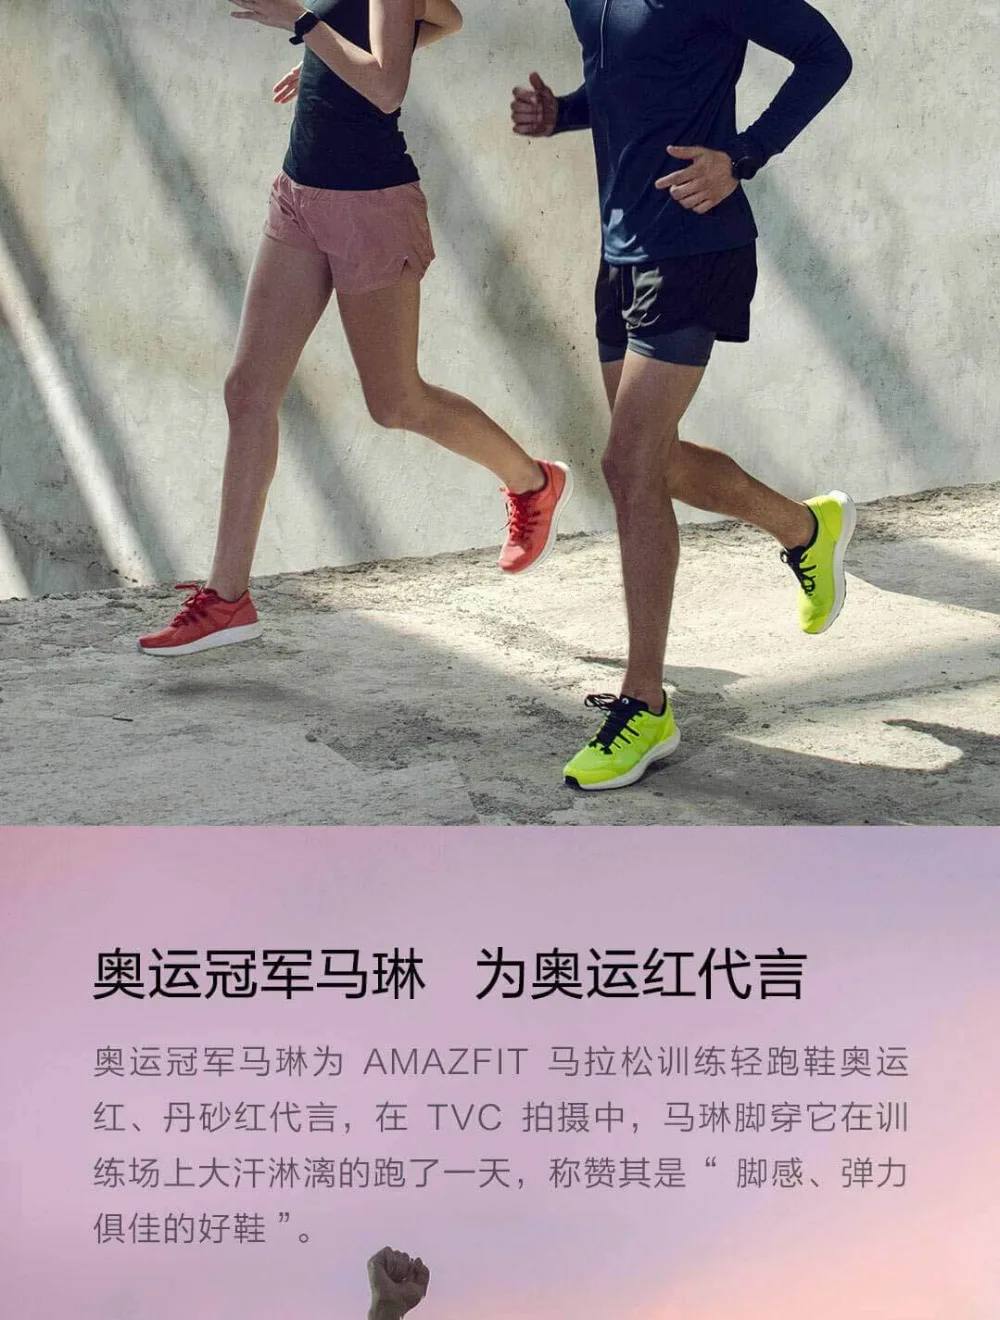 Xiaomi Amazfit Marathon тренировочные кроссовки спортивная обувь легкая дышащая Стабильная поддержка для мужчин и женщин спортивная обувь Прямая поставка